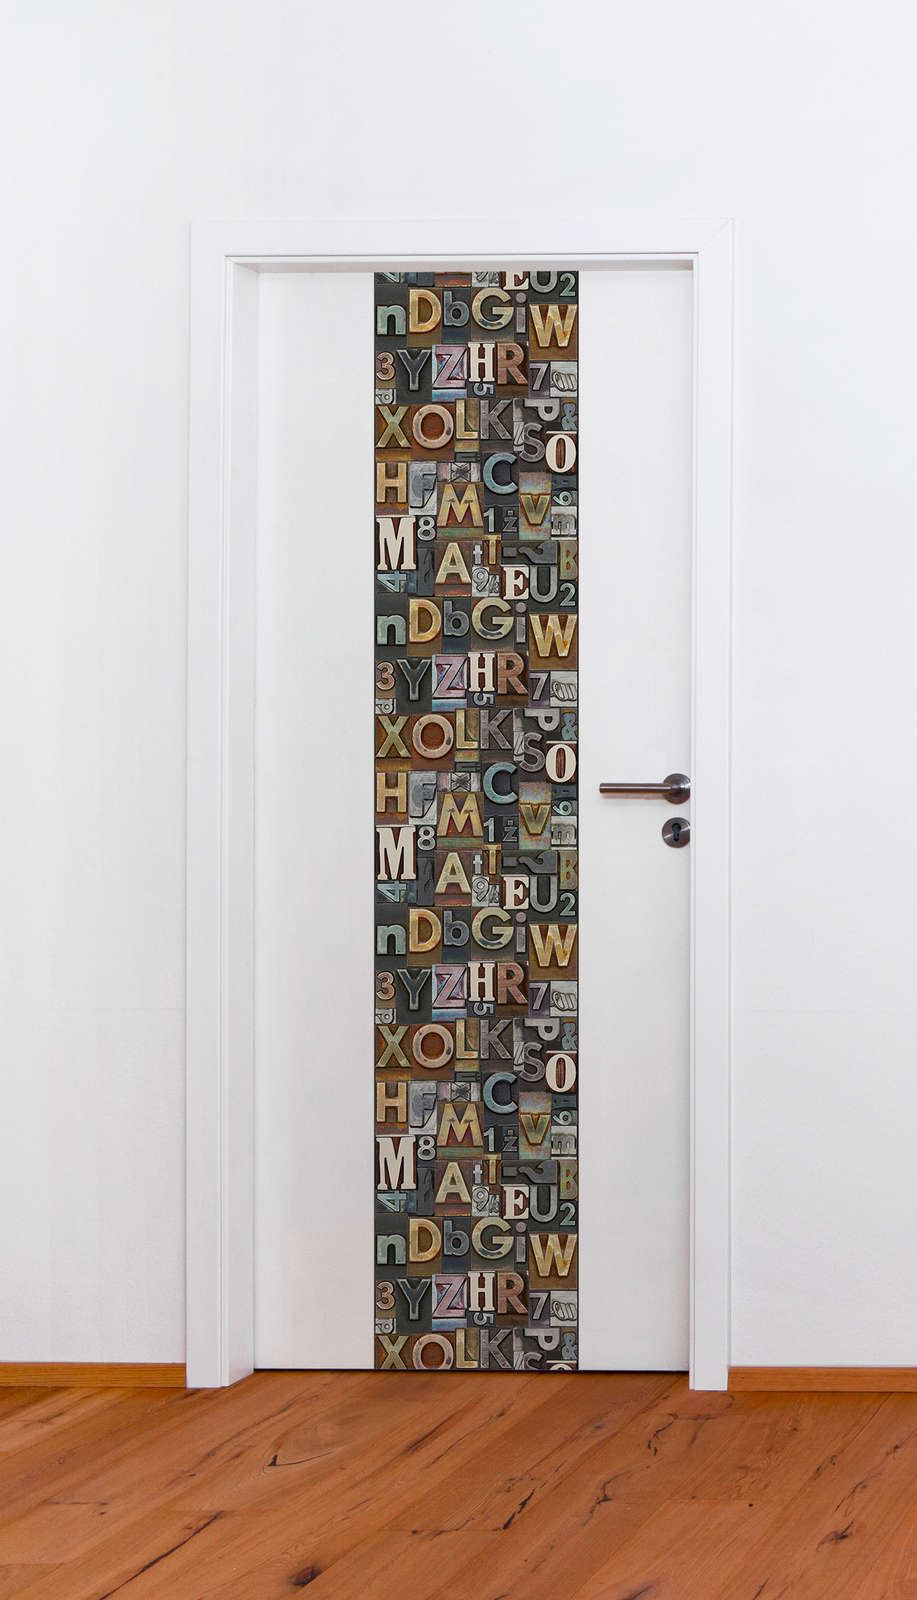             Papier peint avec typographie, lettres colorées dans un look usé - marron, multicolore
        